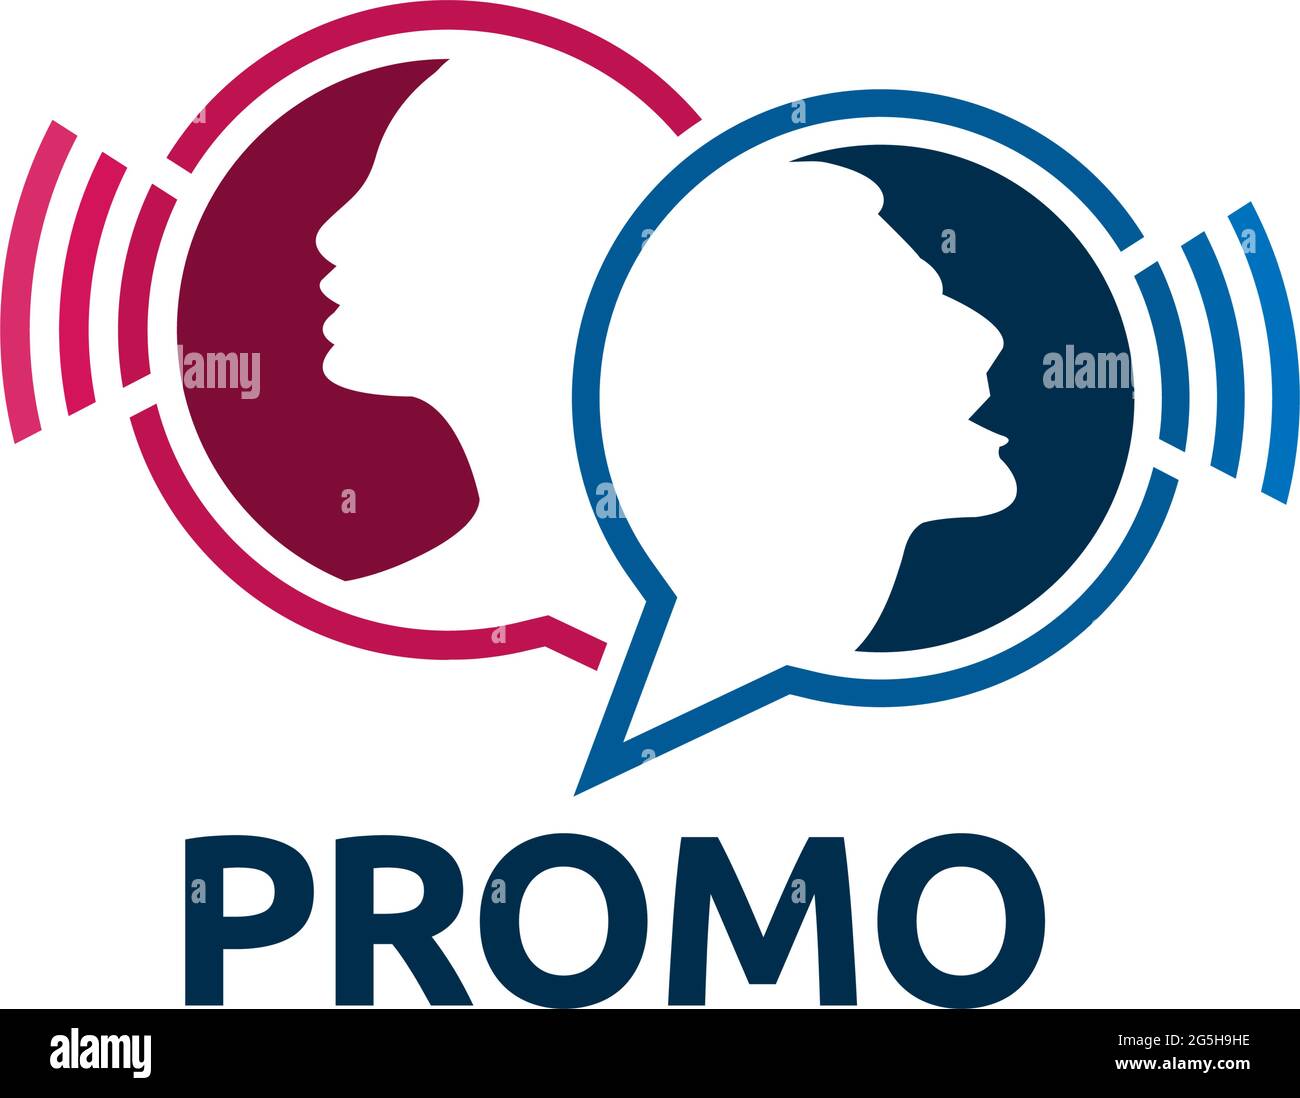 Icona promozione con persone. Immagine vettoriale piatta su sfondo bianco. Illustrazione Vettoriale